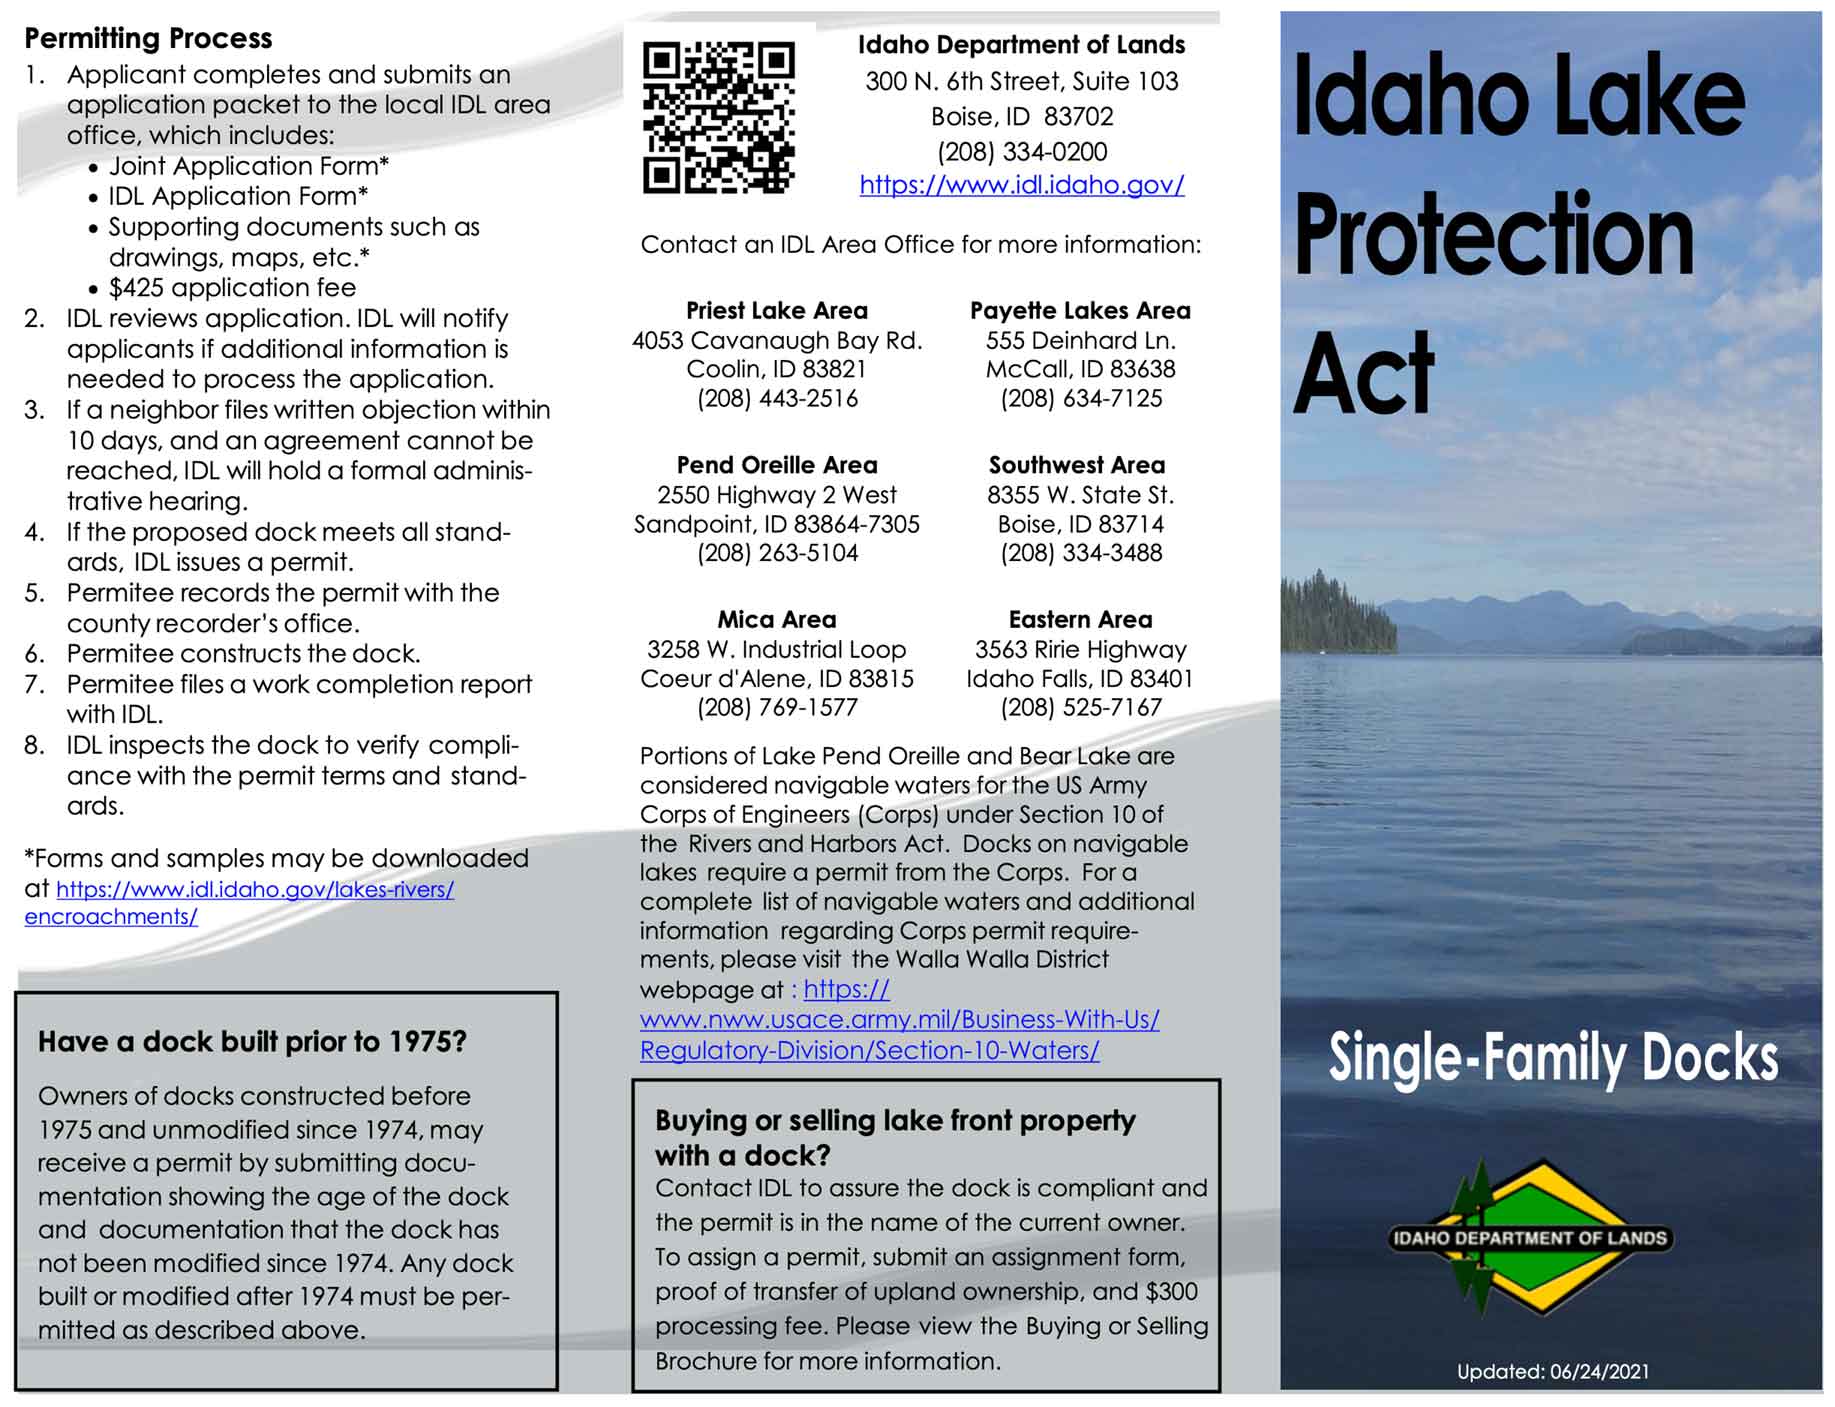 Idaho Lake Protection Act